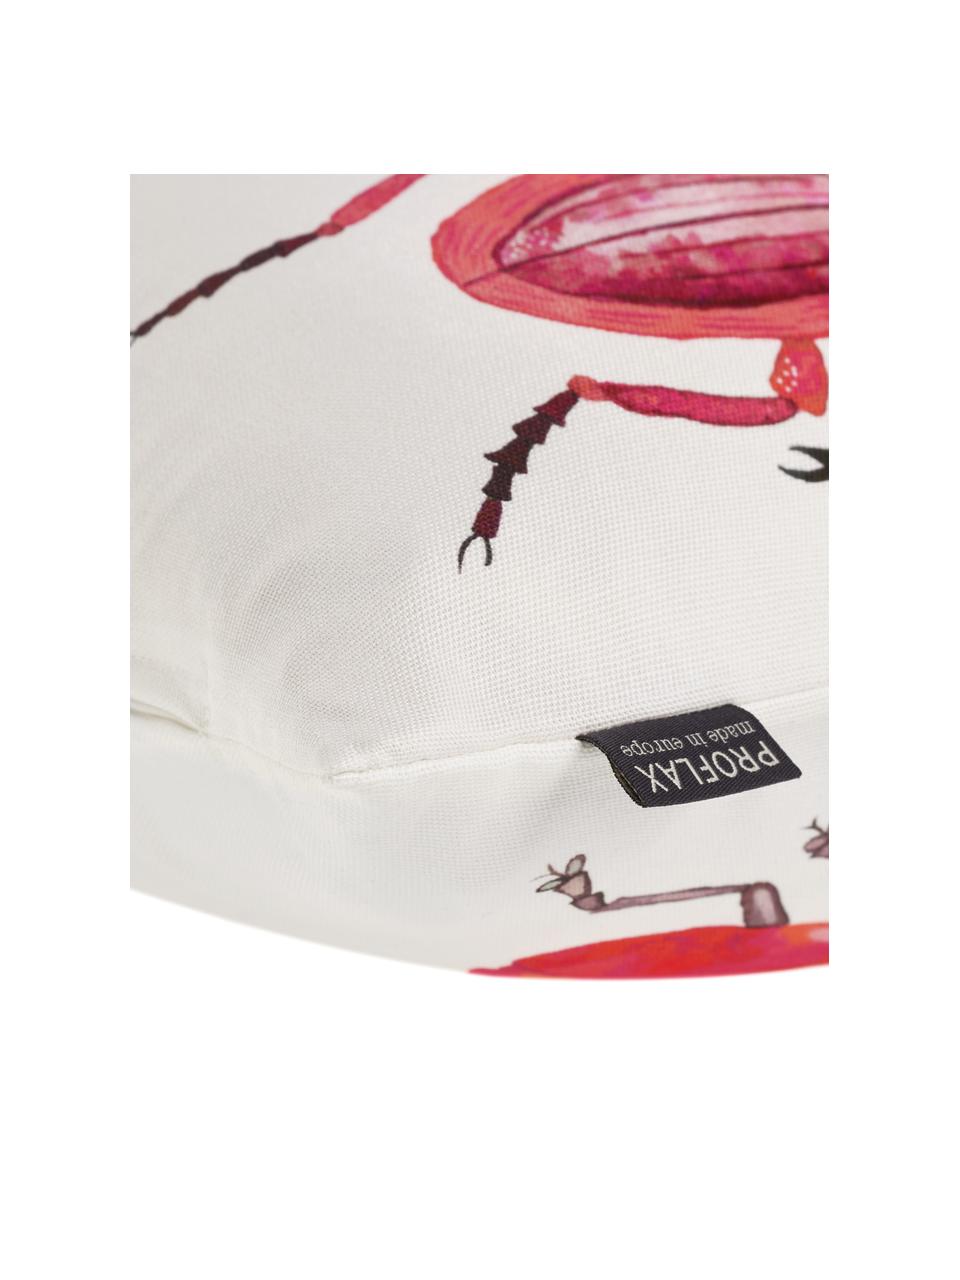 Kissenhülle Amigos mit Käfermotiven, 100% Baumwolle, Weiß, Pink, Schwarz, 30 x 50 cm